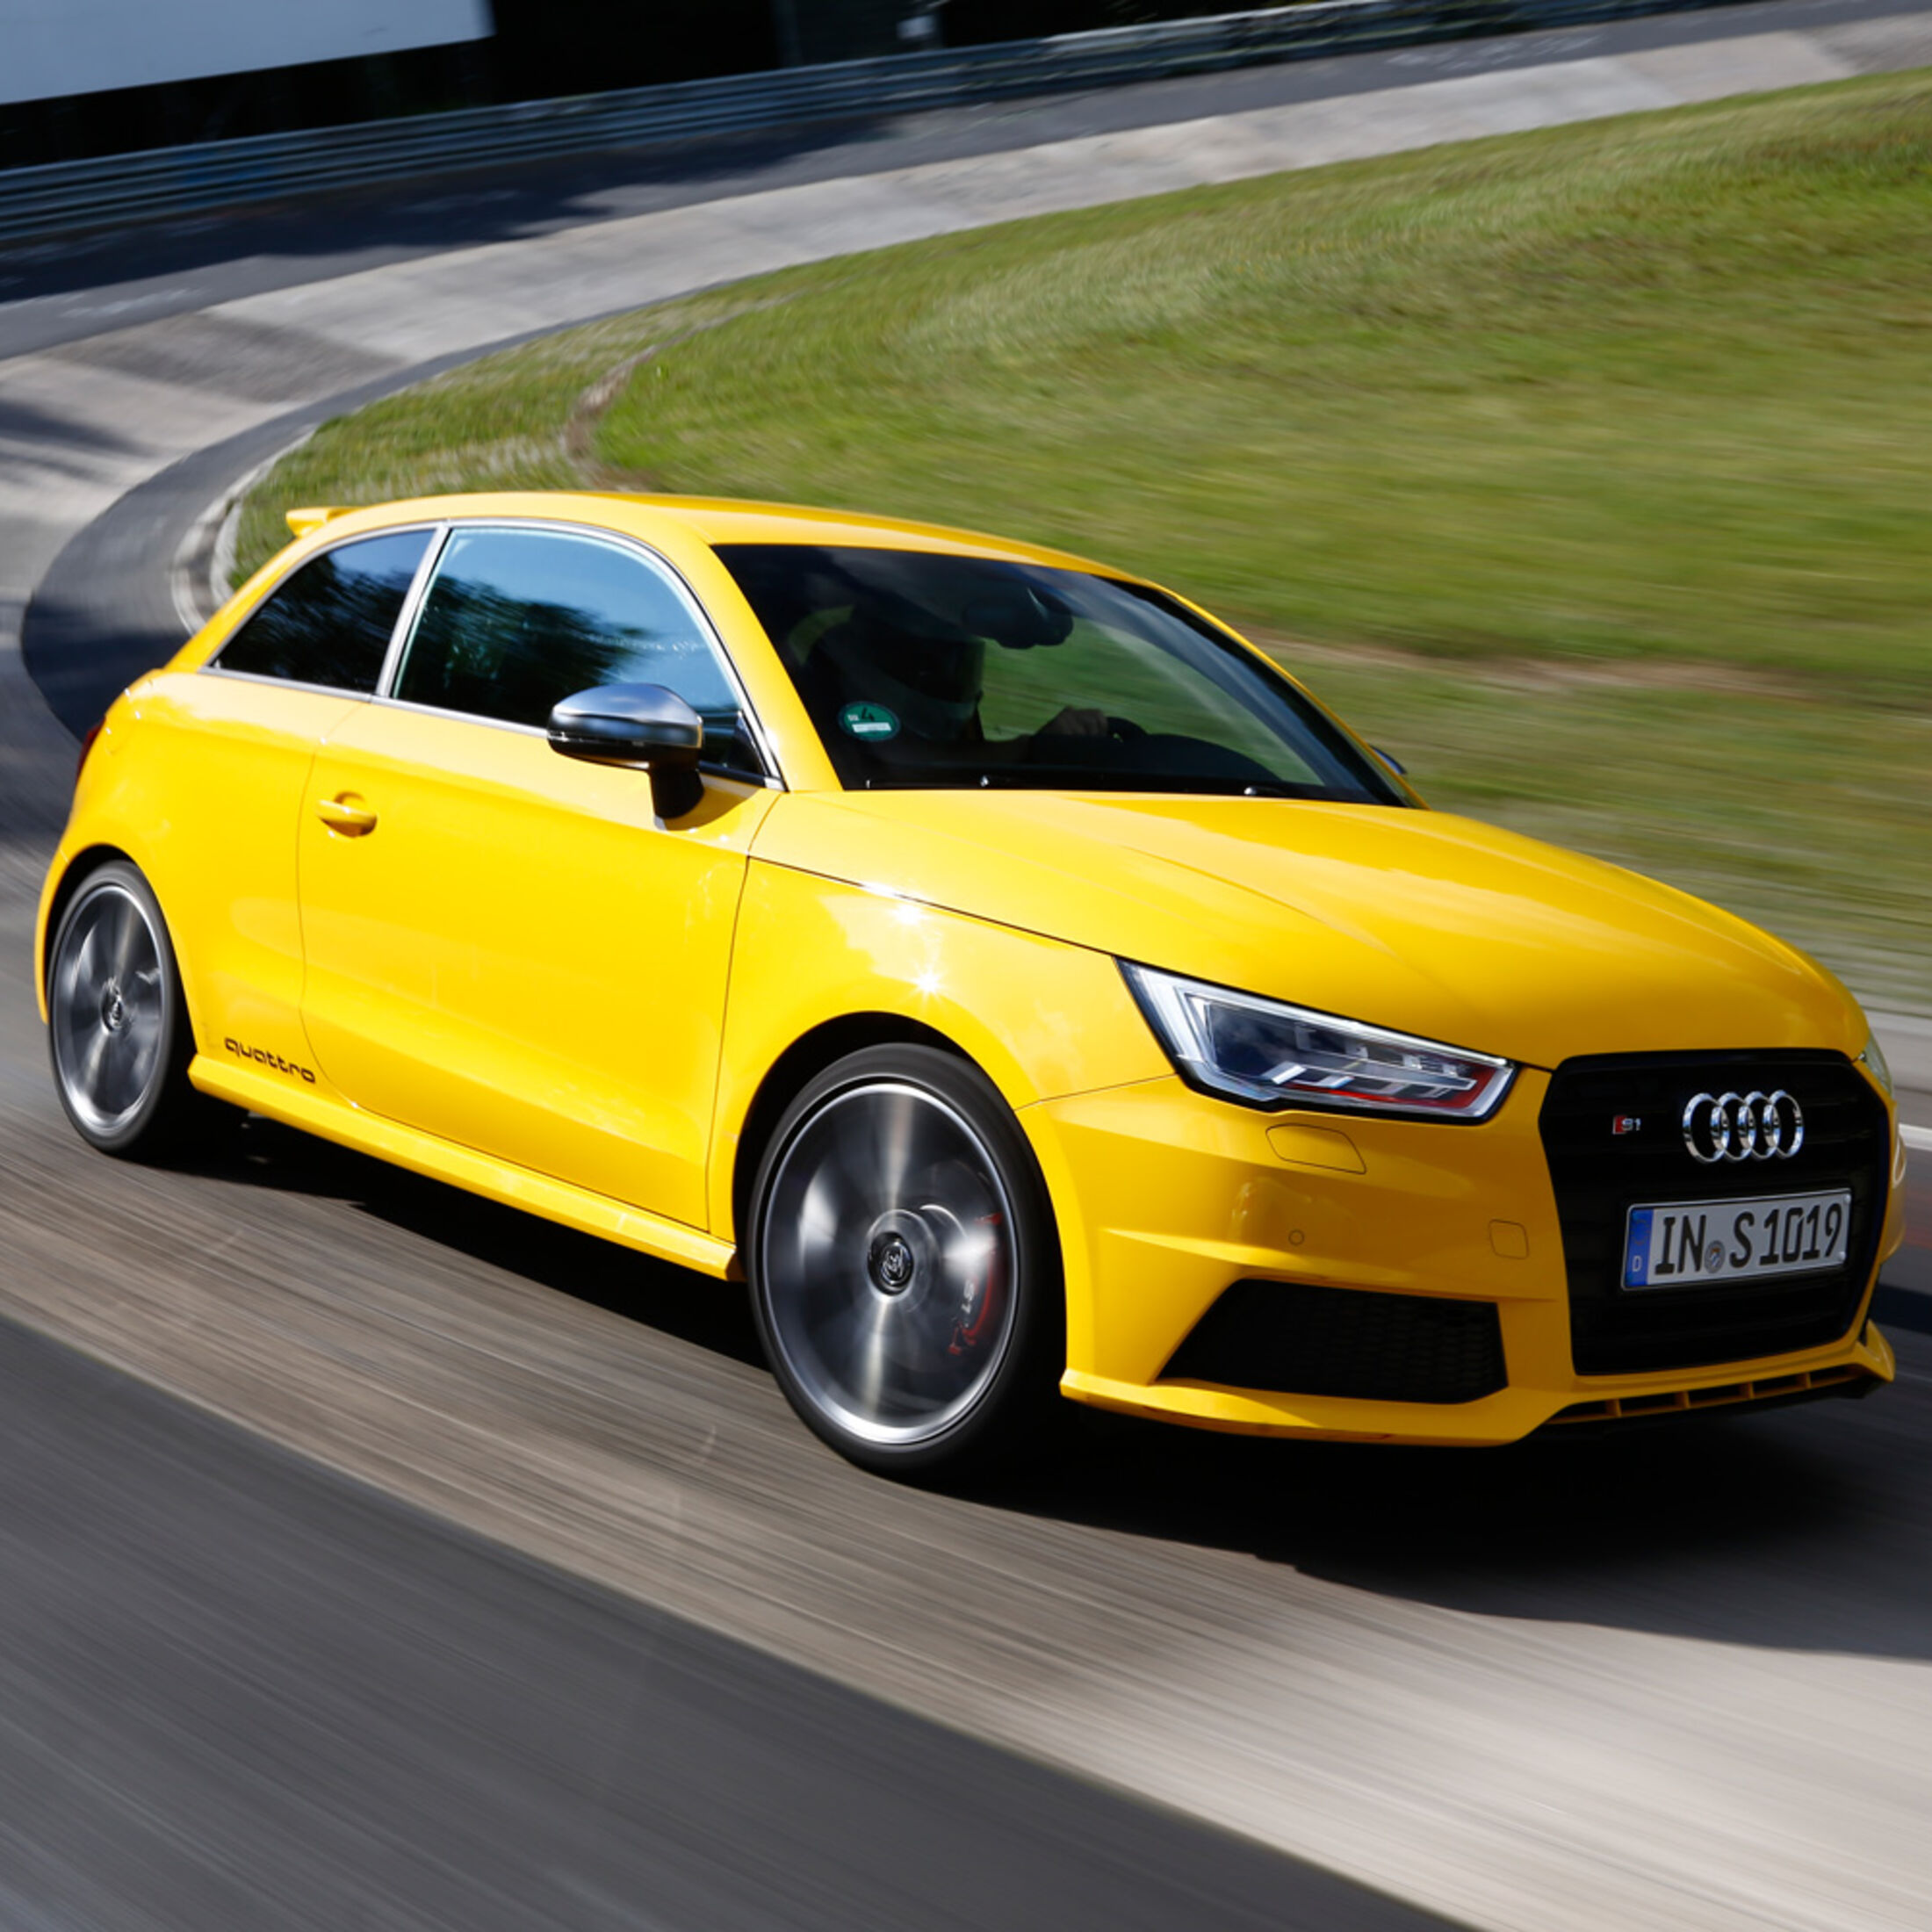 https://imgr1.auto-motor-und-sport.de/Audi-S1-Frontansicht-jsonLd1x1-b822fdc-818900.jpg